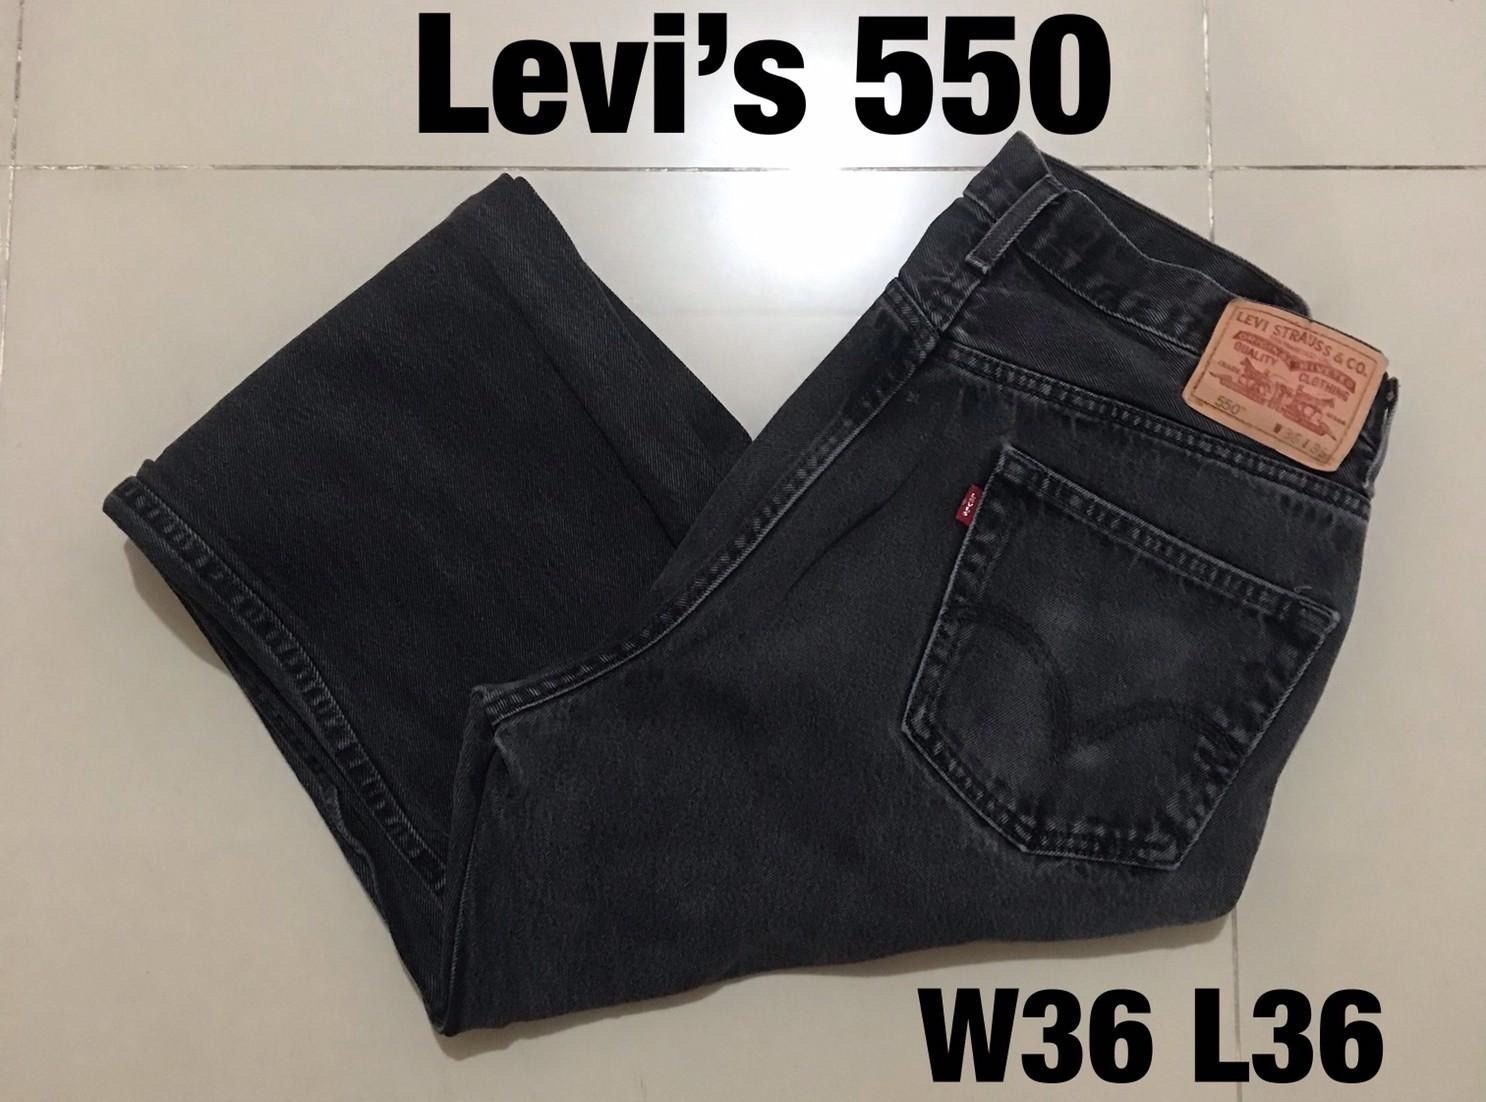 342【Levi's 550 BLACK】W36 L36 レソト製 ブラック ワイド バギー